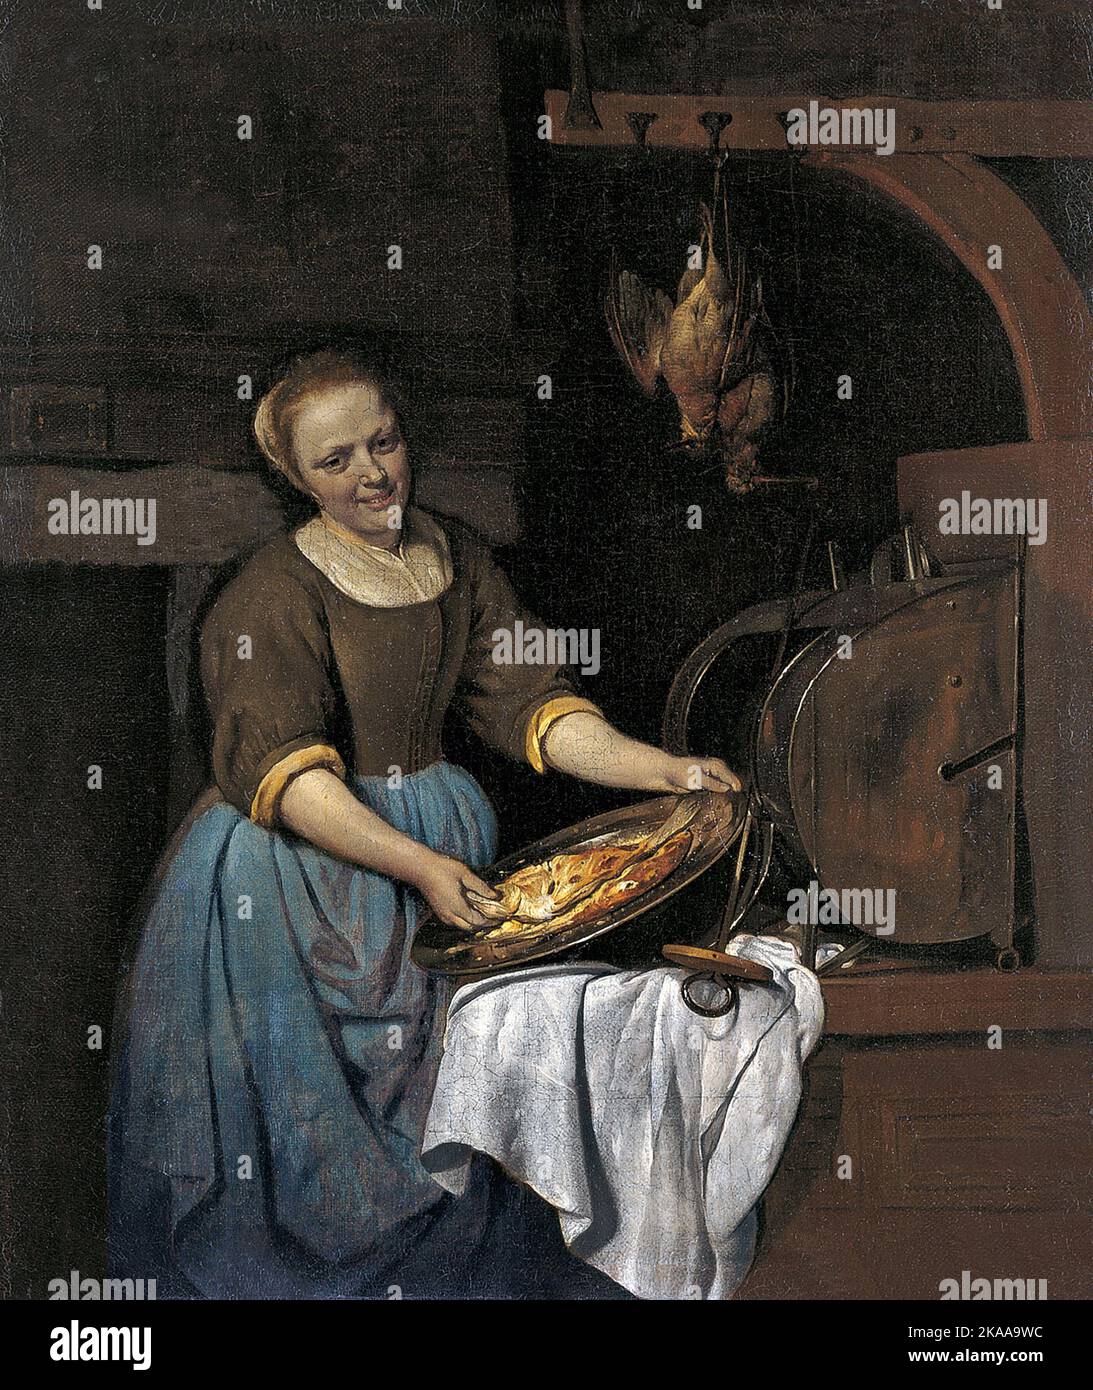 El cocinero, 1657, pintura de Gabriel Metsu Foto de stock